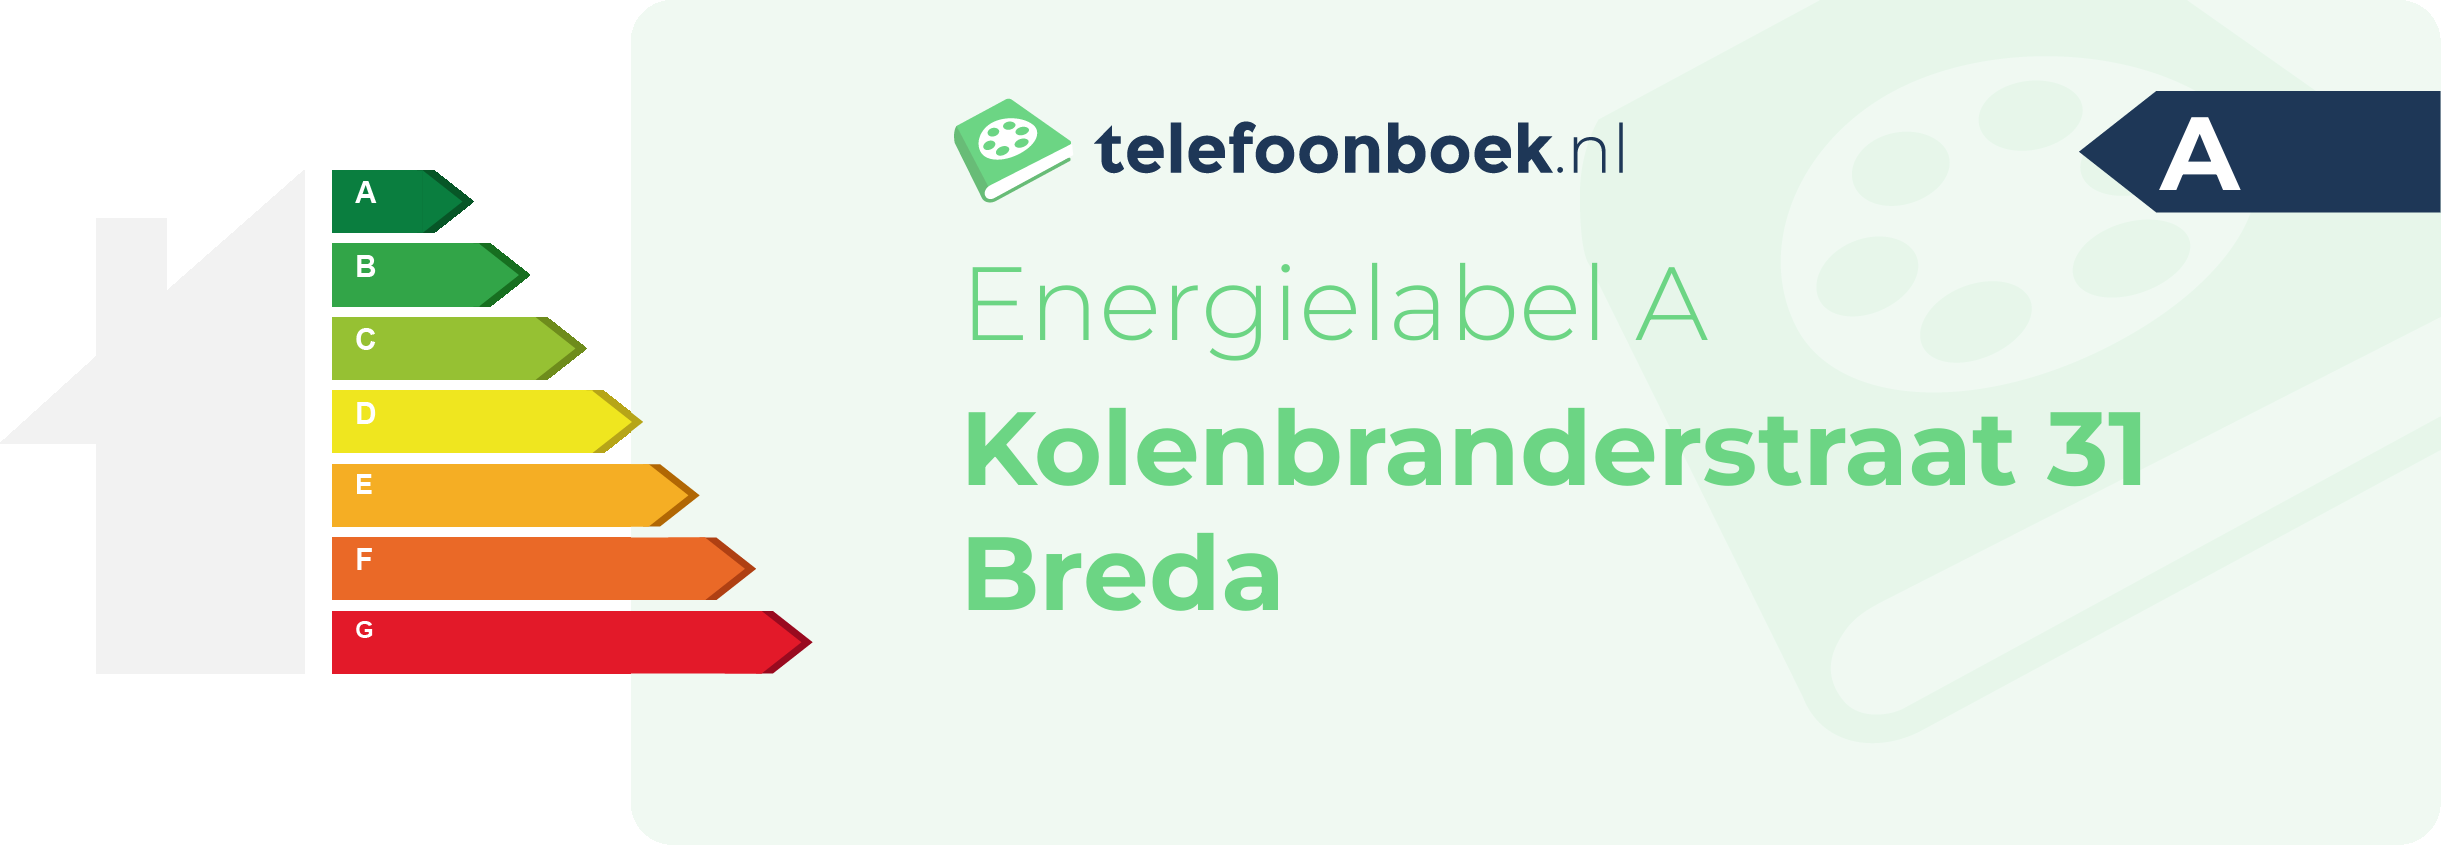 Energielabel Kolenbranderstraat 31 Breda